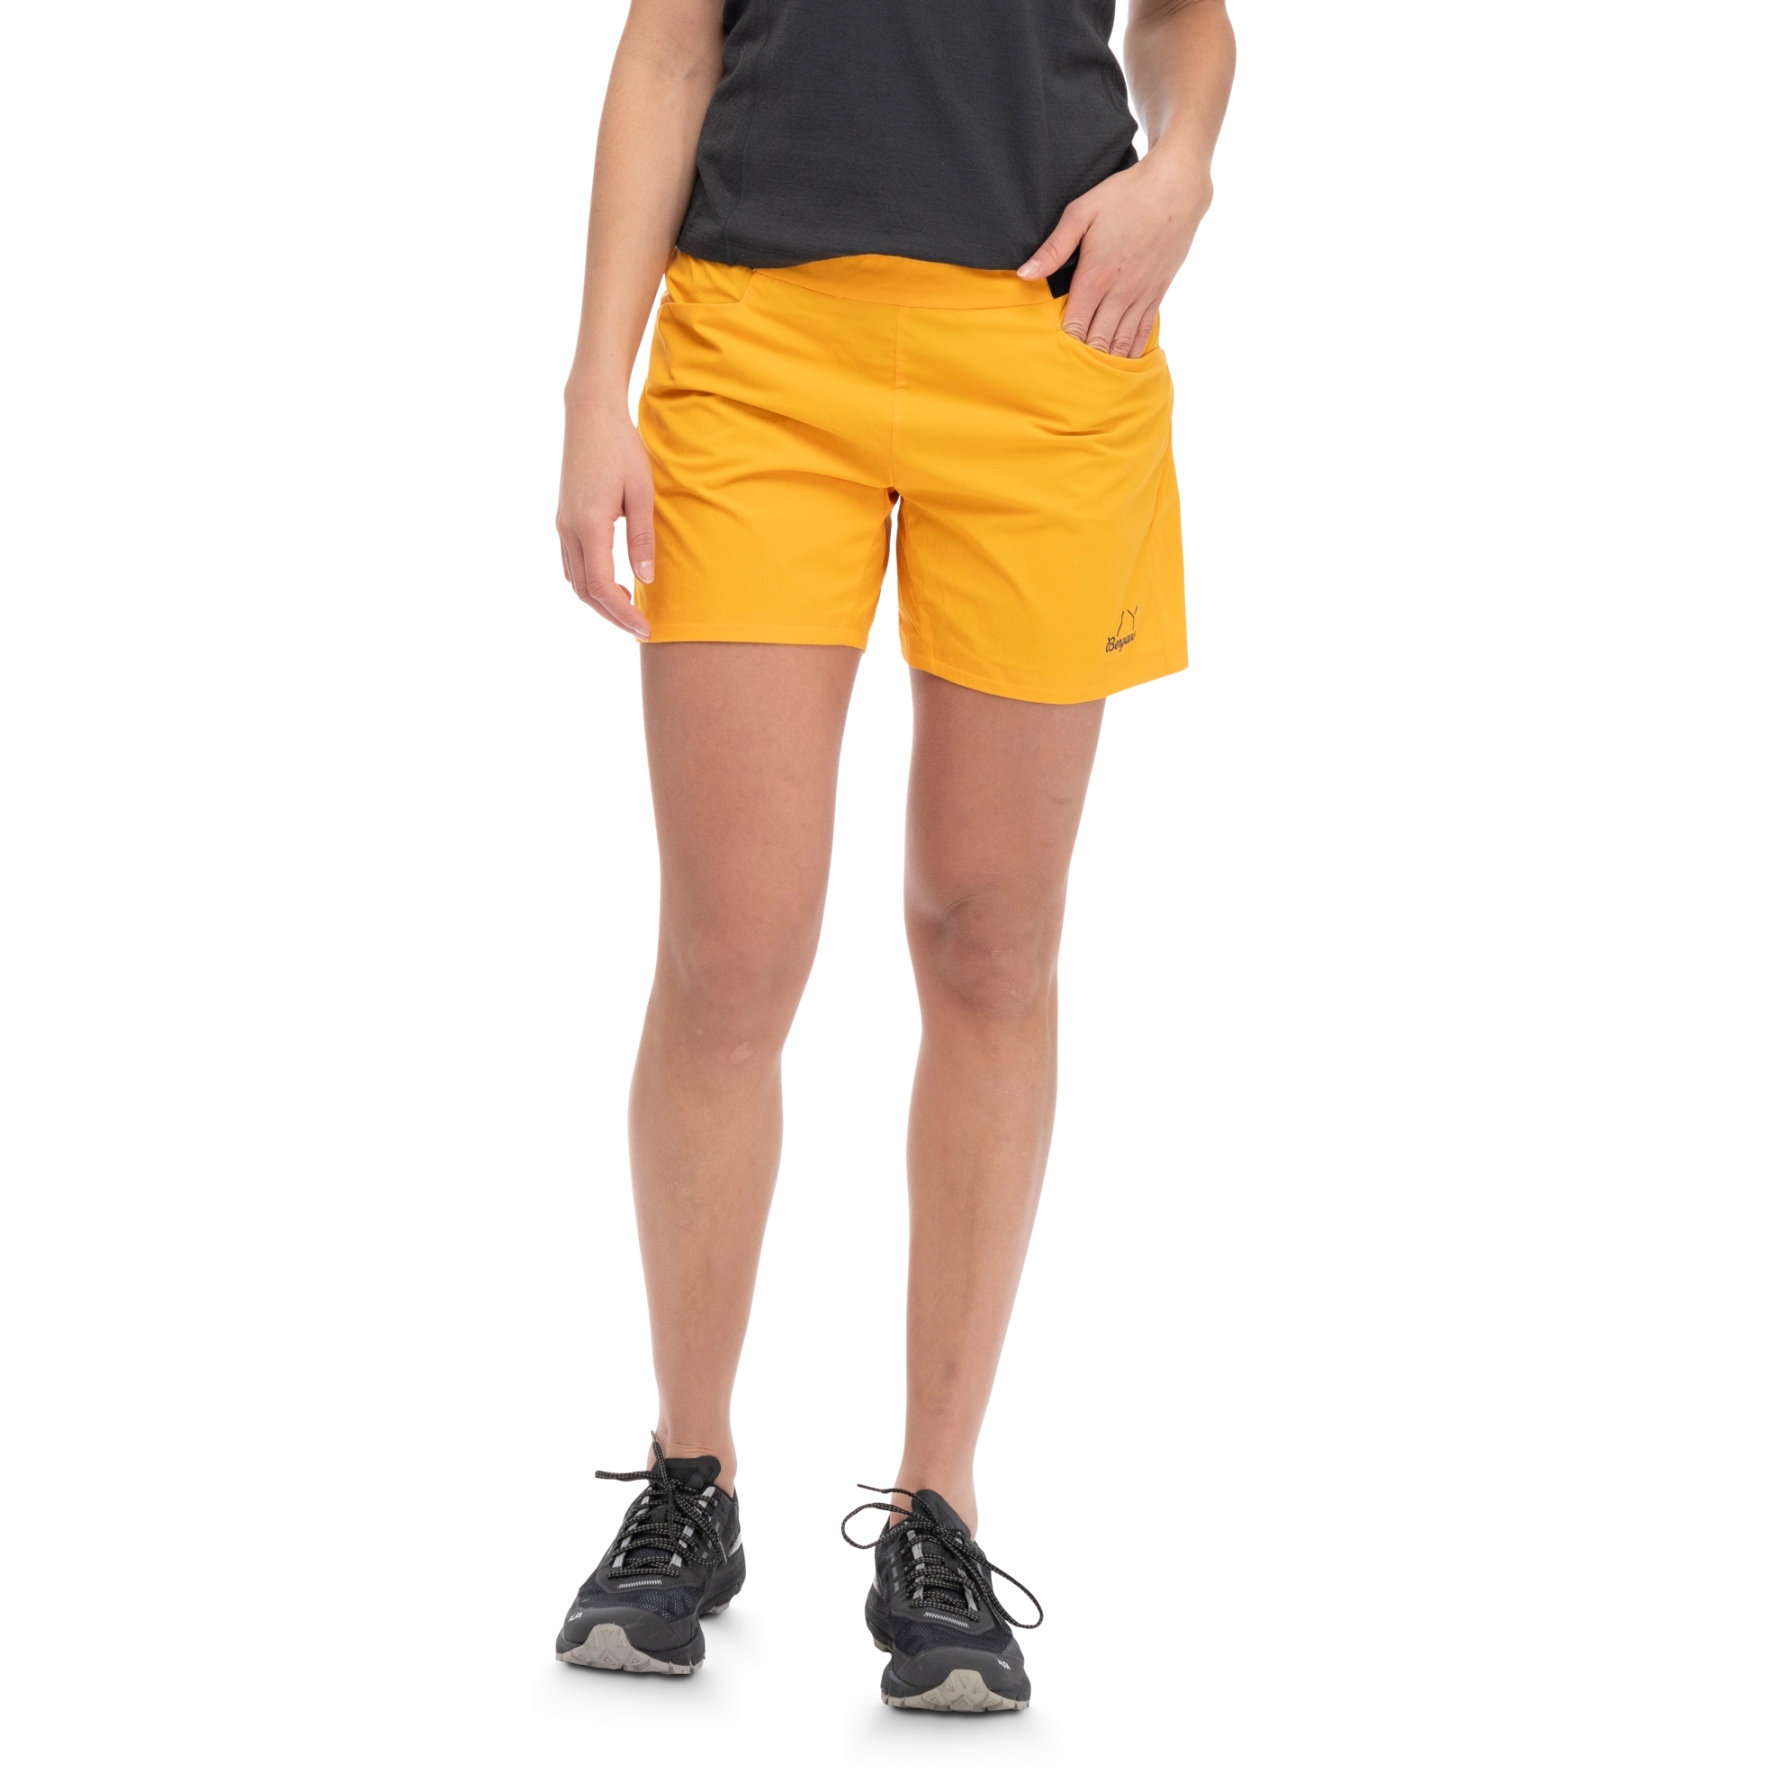 Produktbild von Bergans Y LightLine Vapor 2 Shorts Damen - mango yellow/dark shadow grey